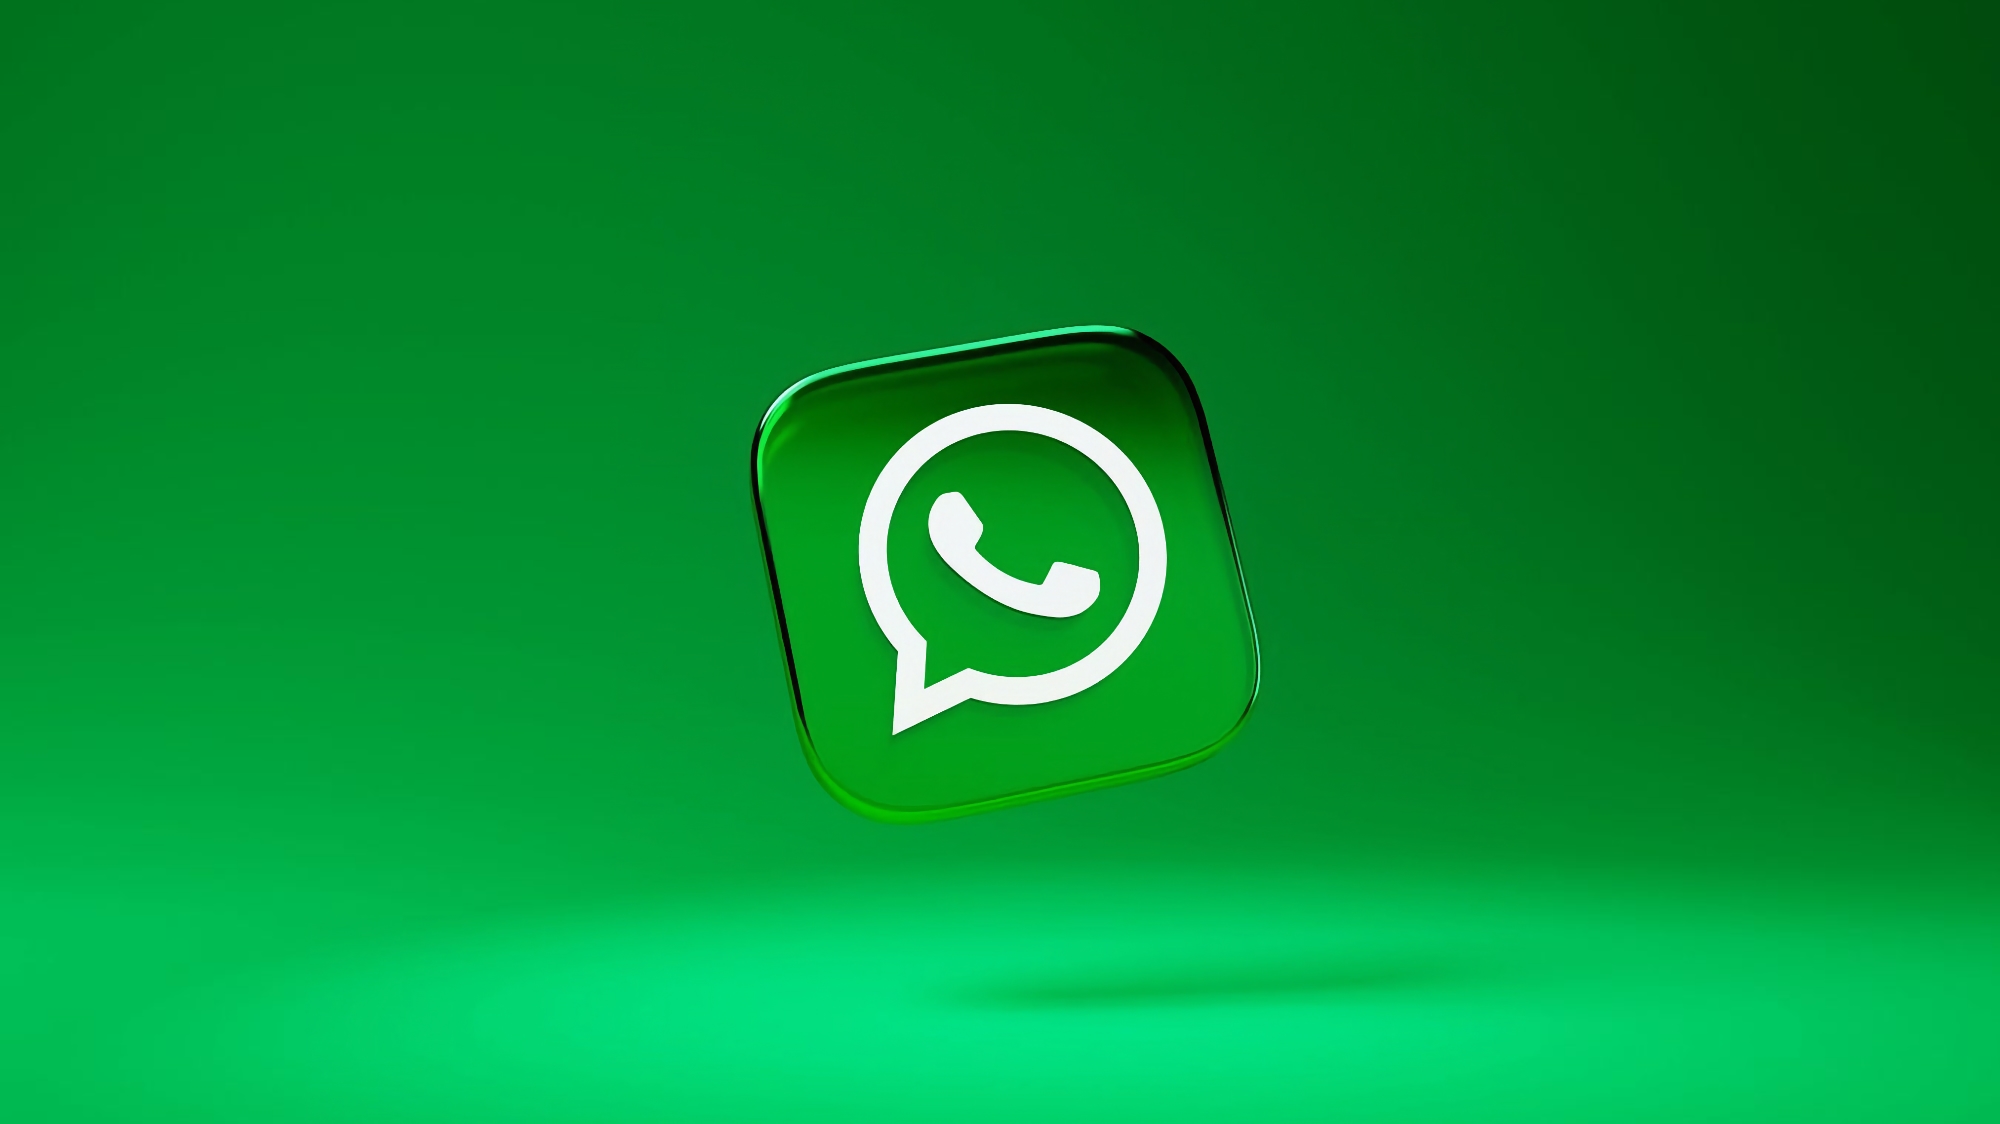 WhatsApp biedt de mogelijkheid om foto's in hoge kwaliteit te versturen